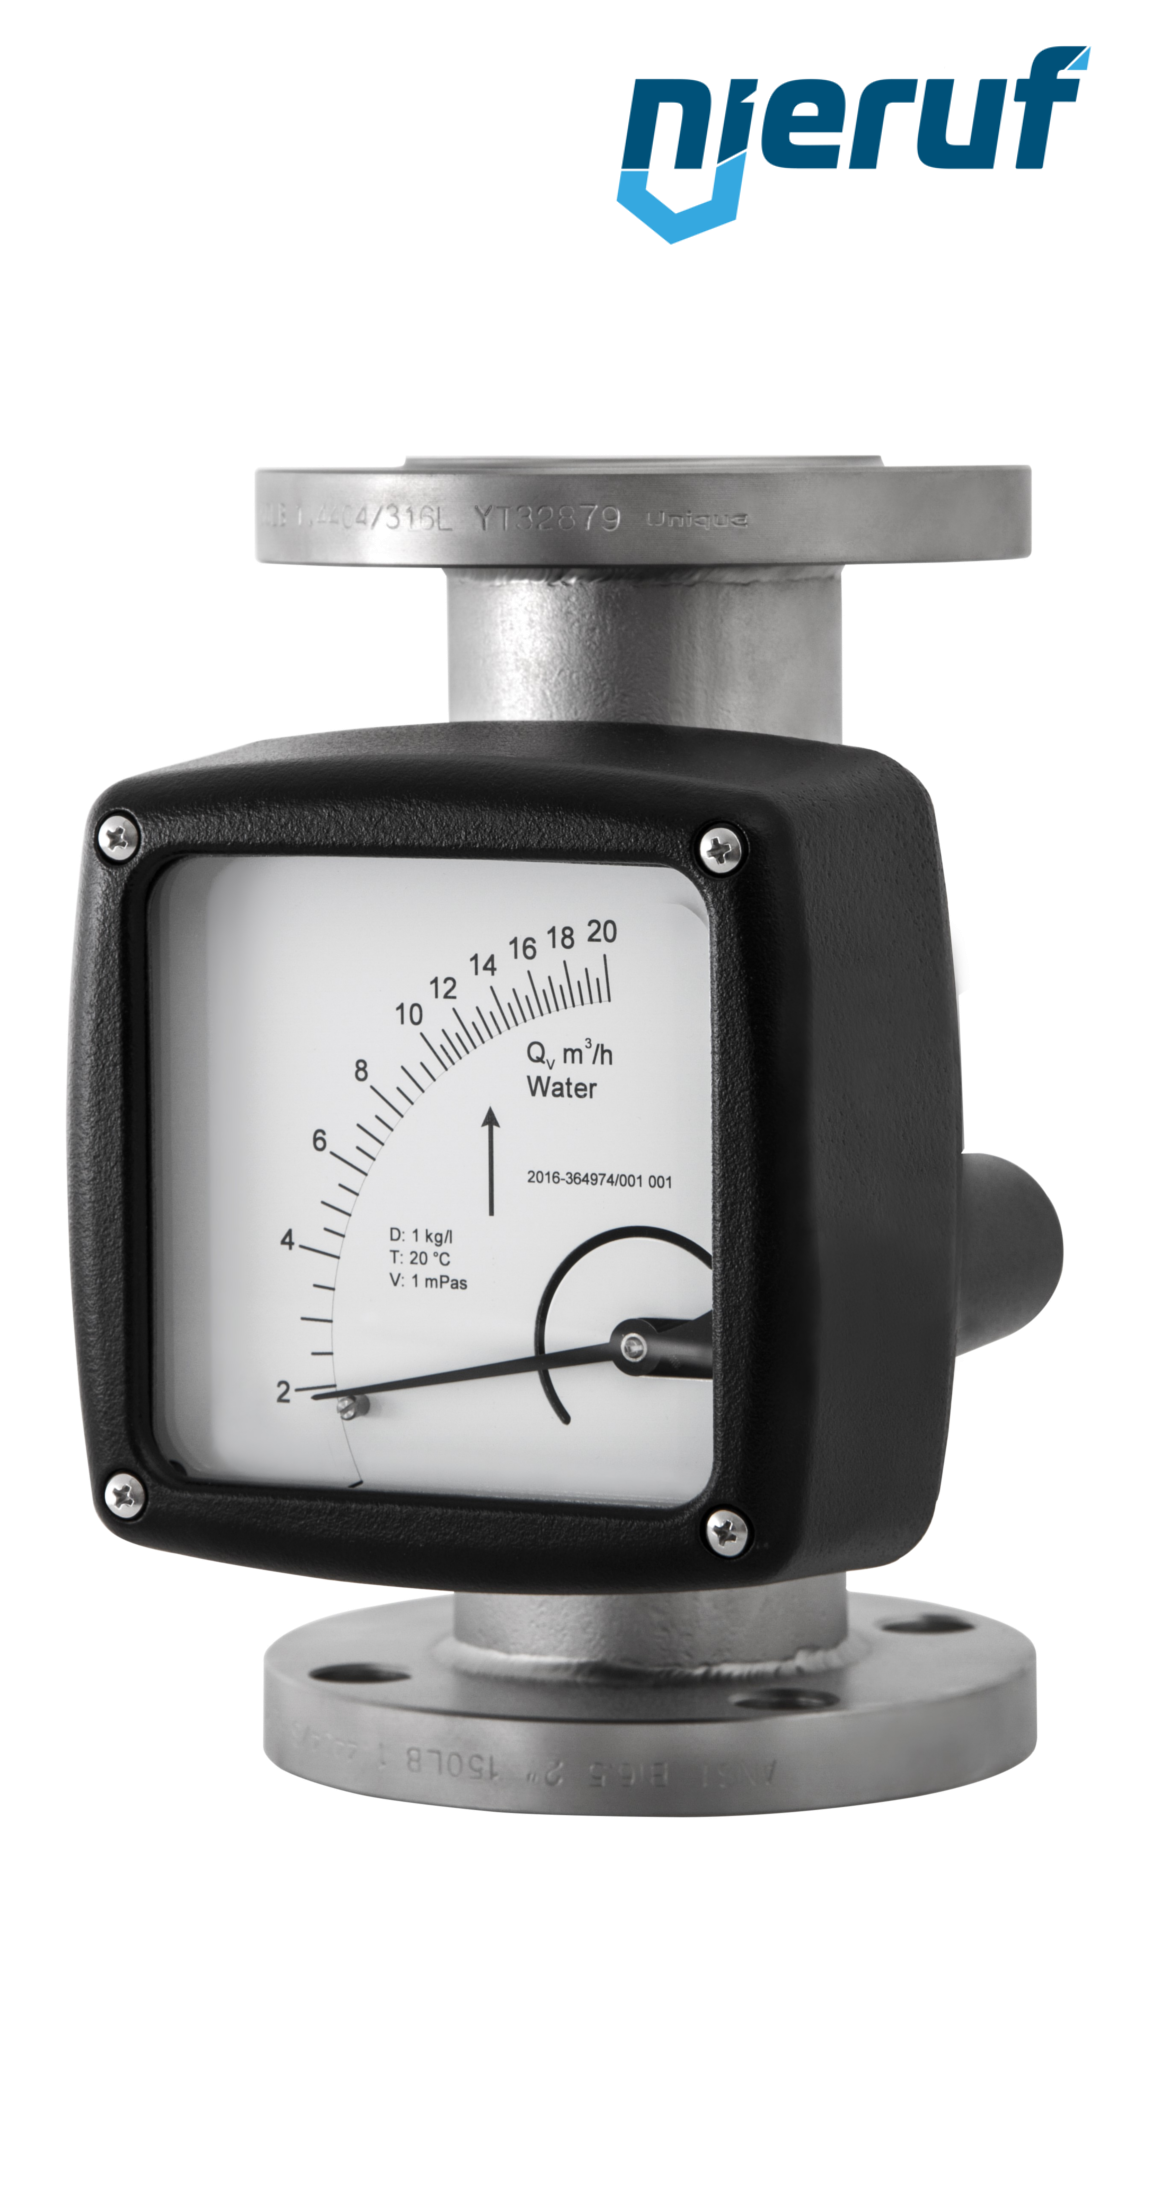 misuratore di flusso / rotametro completamente in metallo DN40-attacco 7,0 - 70,0 m3/h tubo DN25 aria